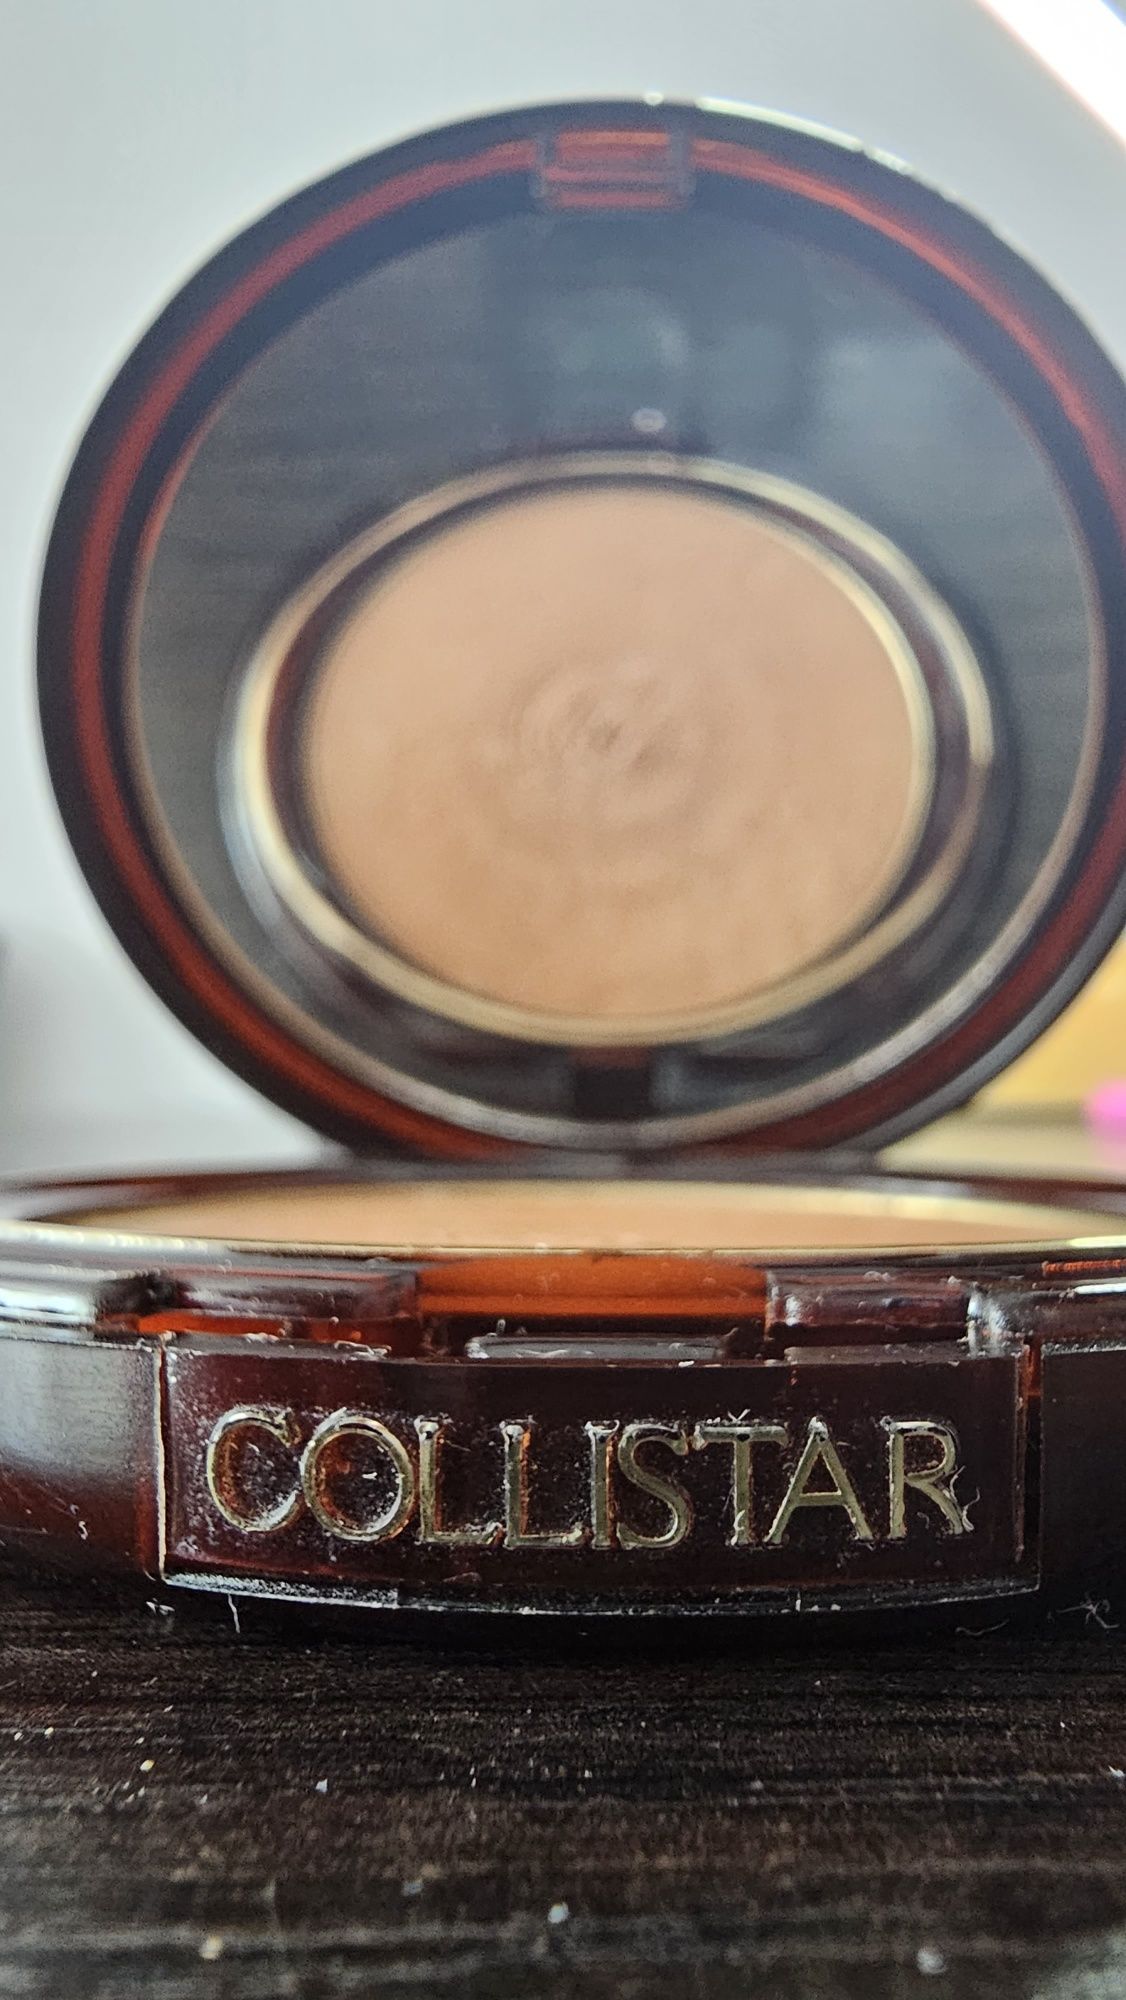 Collistar - Silk Effect Bronzing Powder, Tabacco. Bronzer